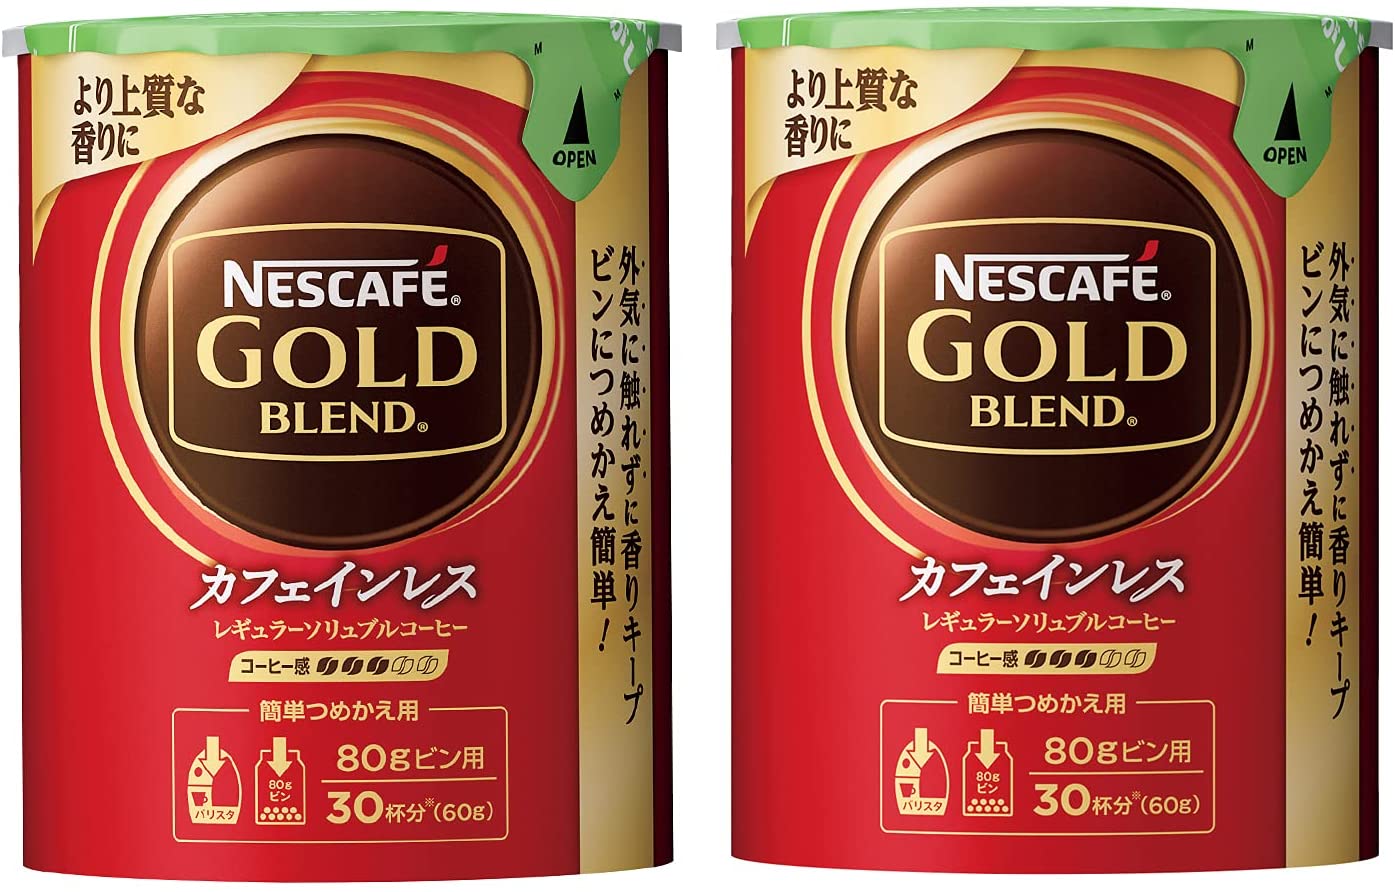 ネスカフェ ゴールドブレンド カフェインレス エコ&システムパック (詰め替え用) 60g2個